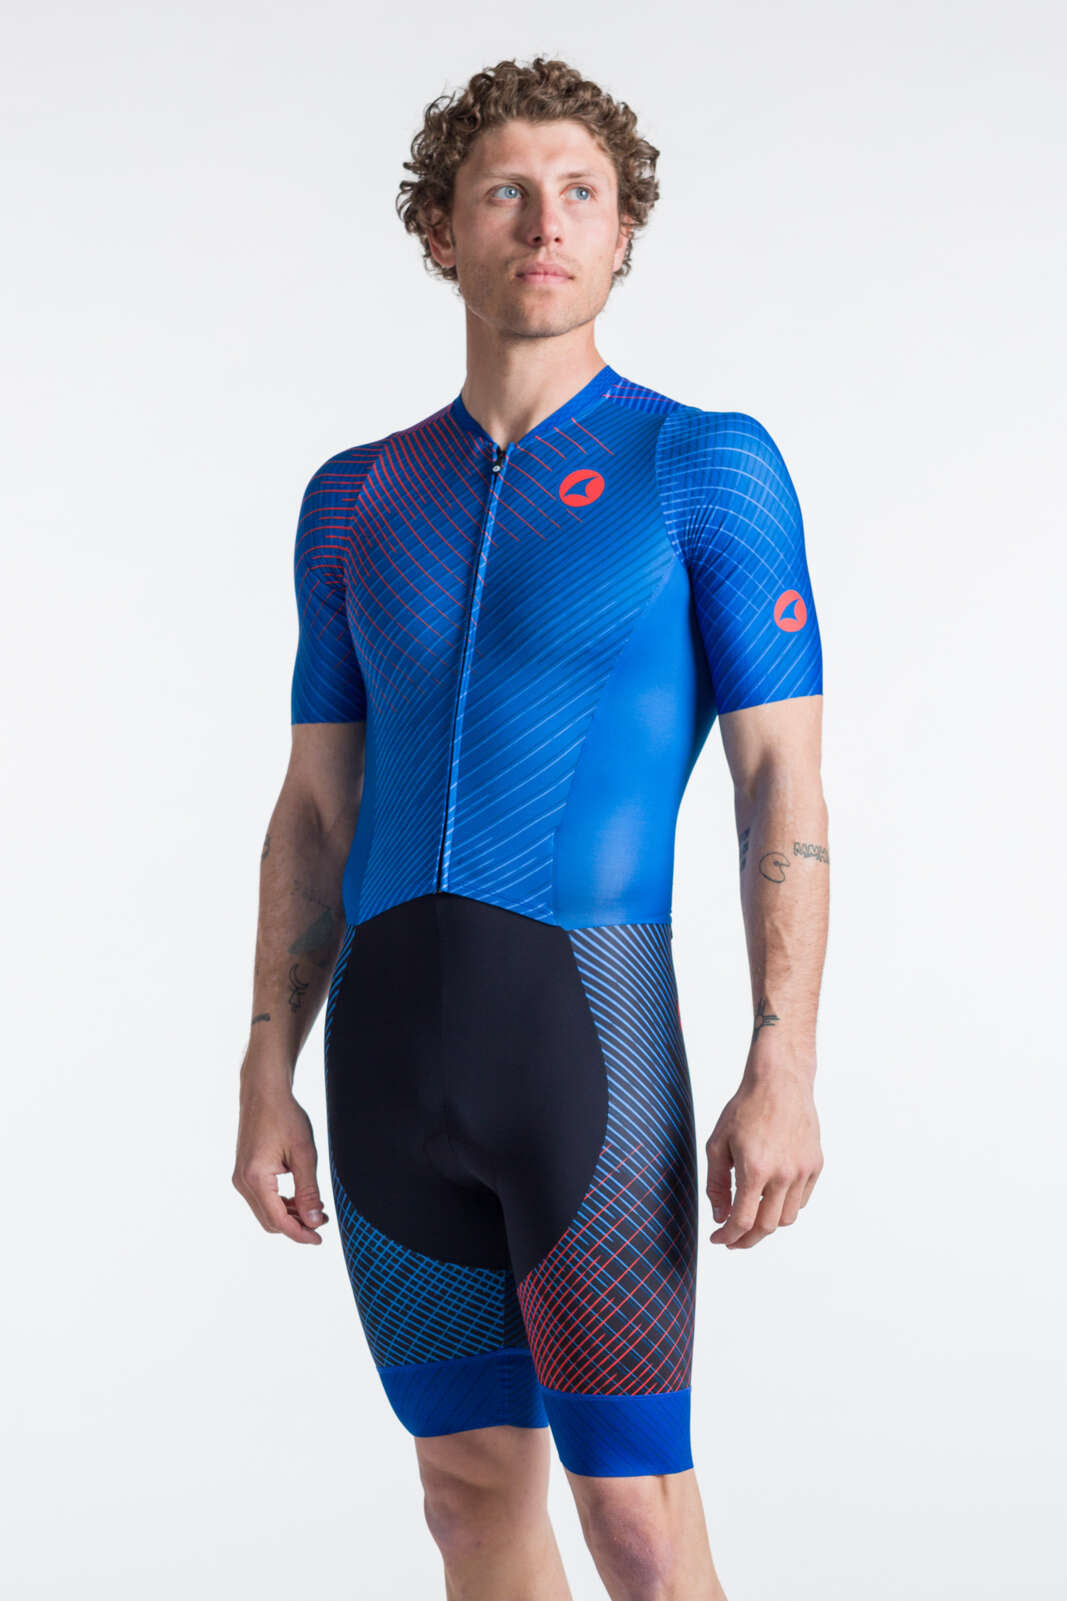 Men's Triathlon Suit - Blue Short Sleeve Front View